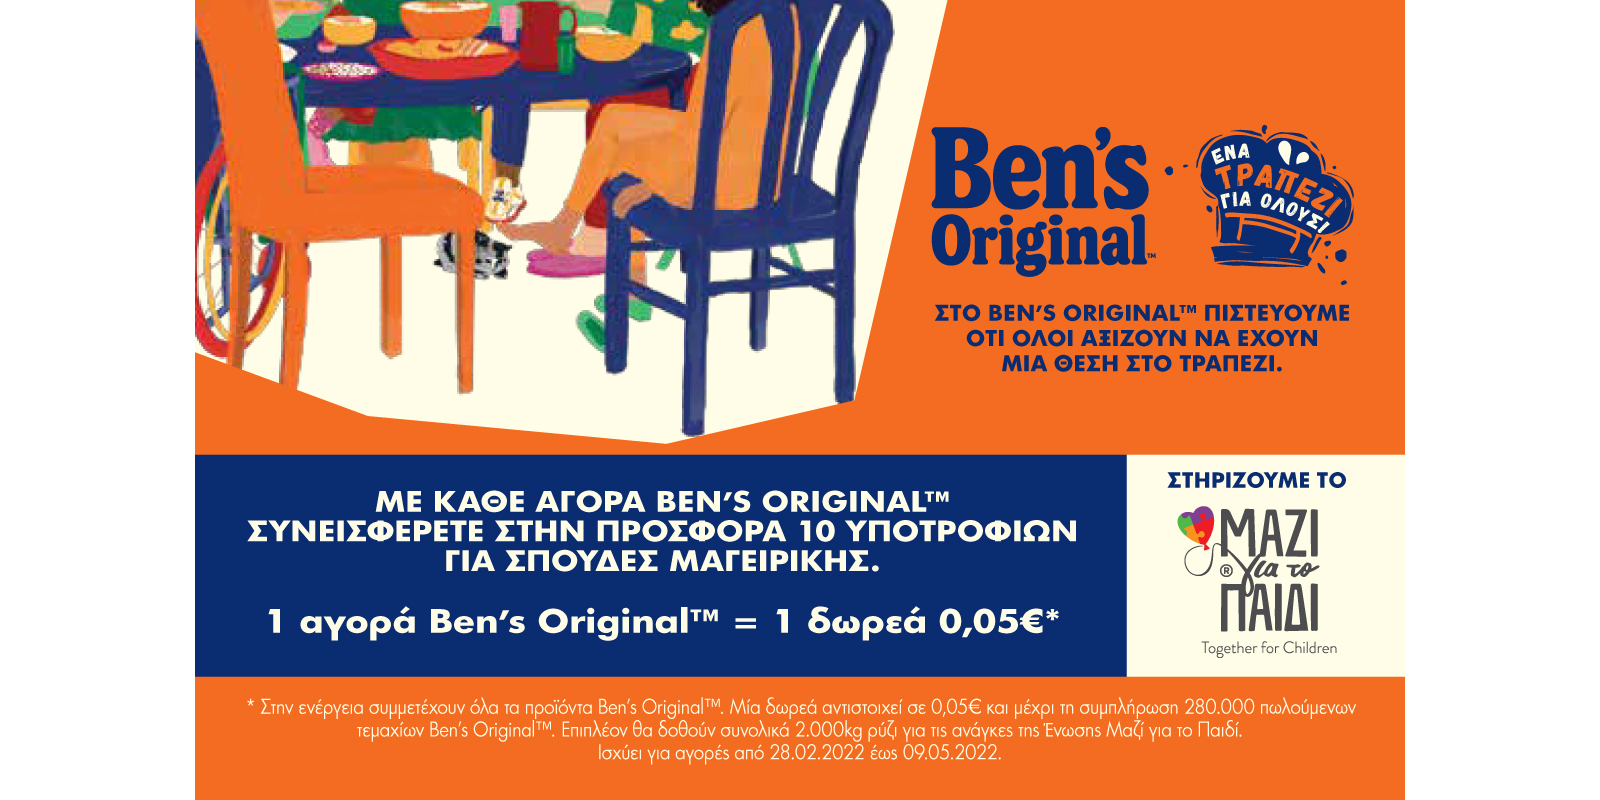 BENS ORIGINAL | A TABLE FOR ALL